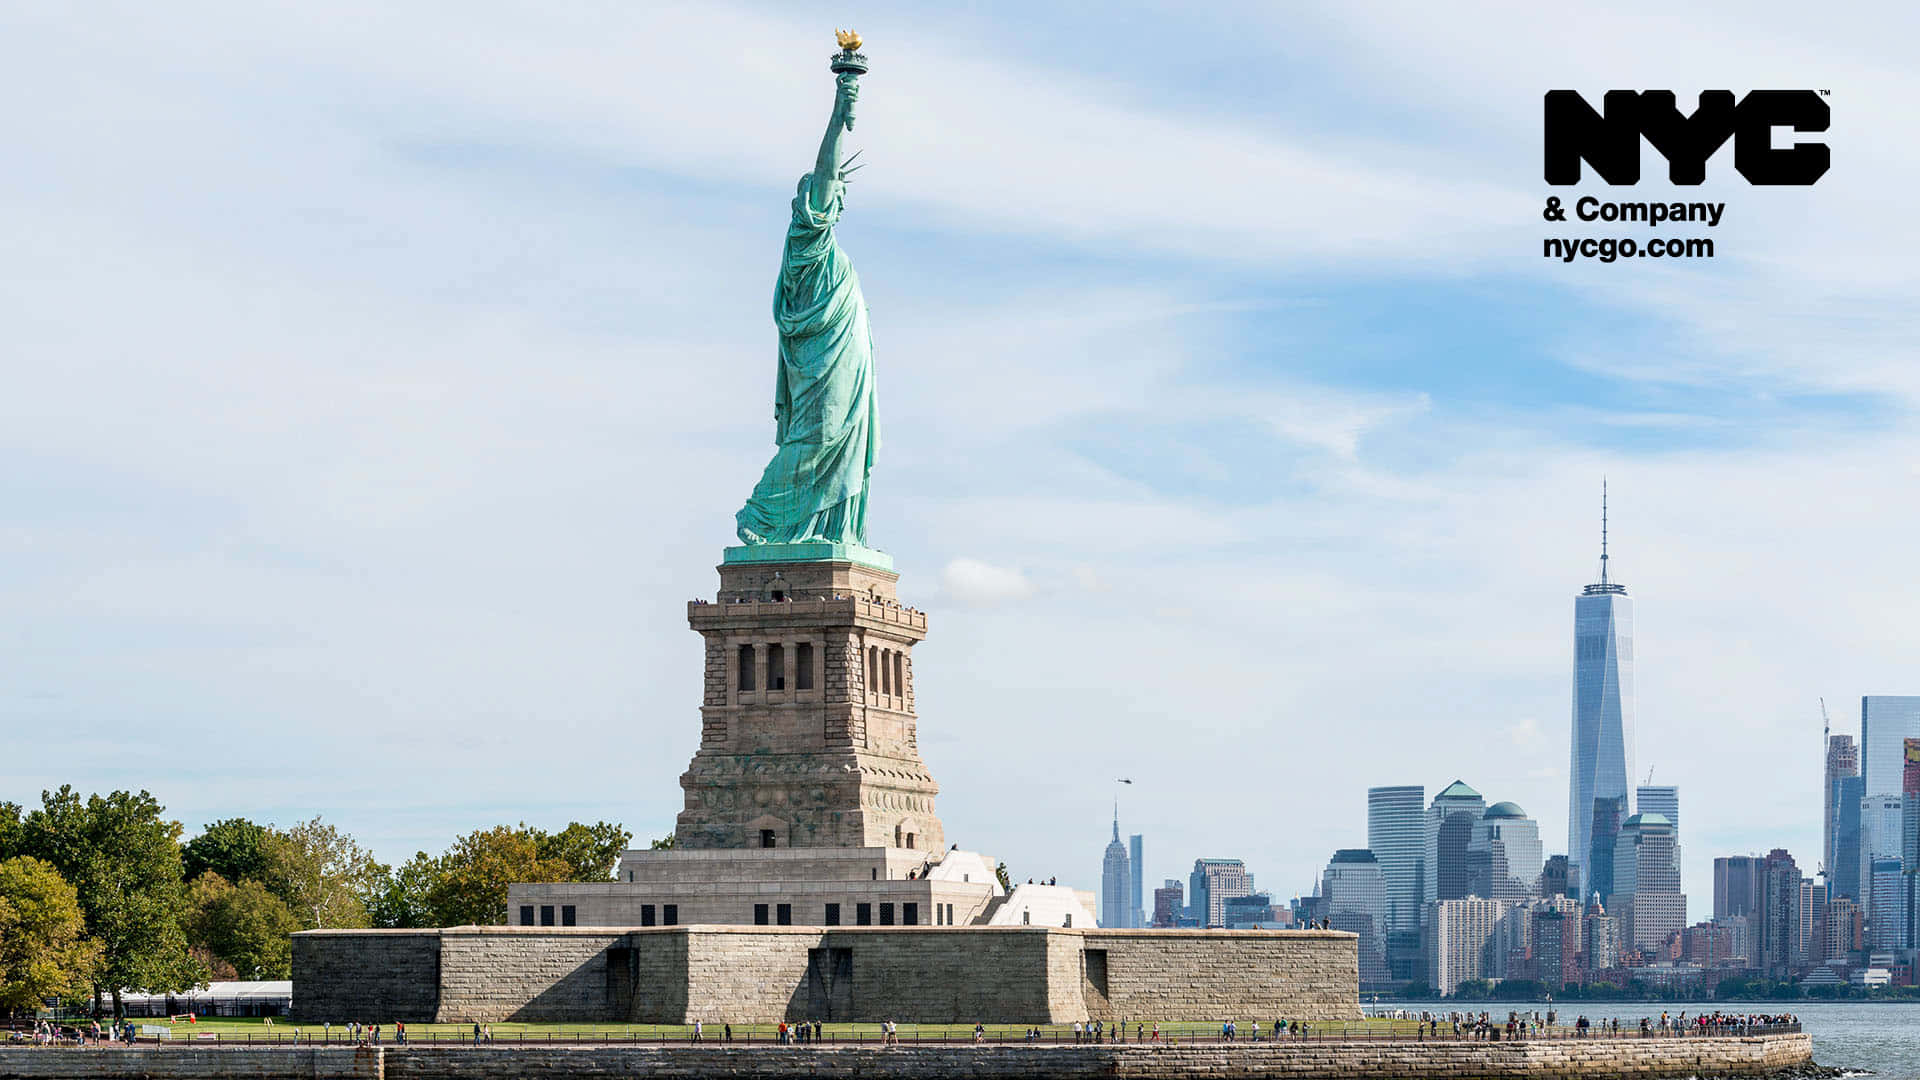 Fondode Pantalla De Alta Definición De La Estatua De La Libertad En Nueva York.